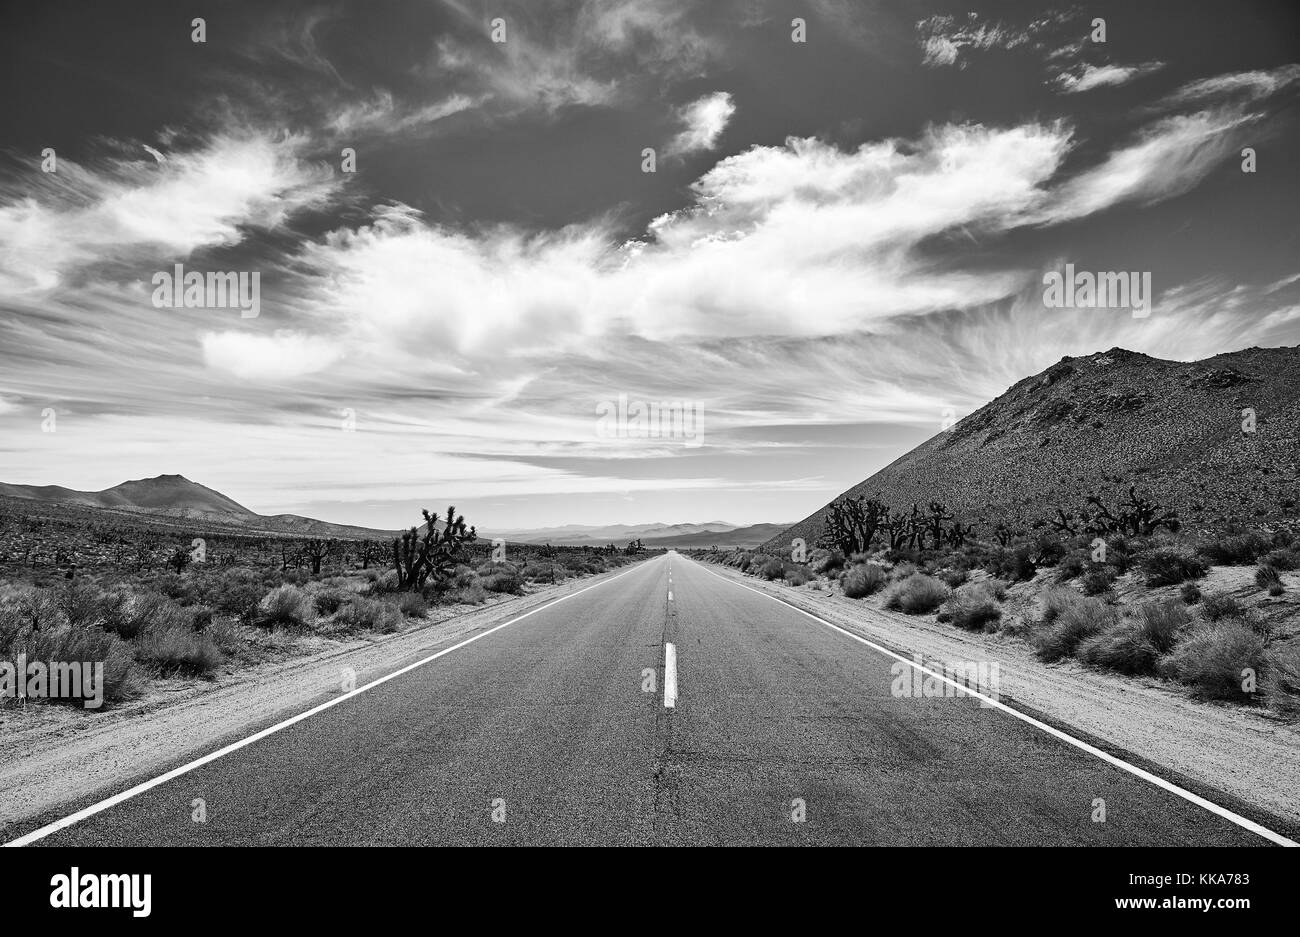 Photo noir et blanc de la route du désert de la vallée de la mort, travel concept, USA. Banque D'Images